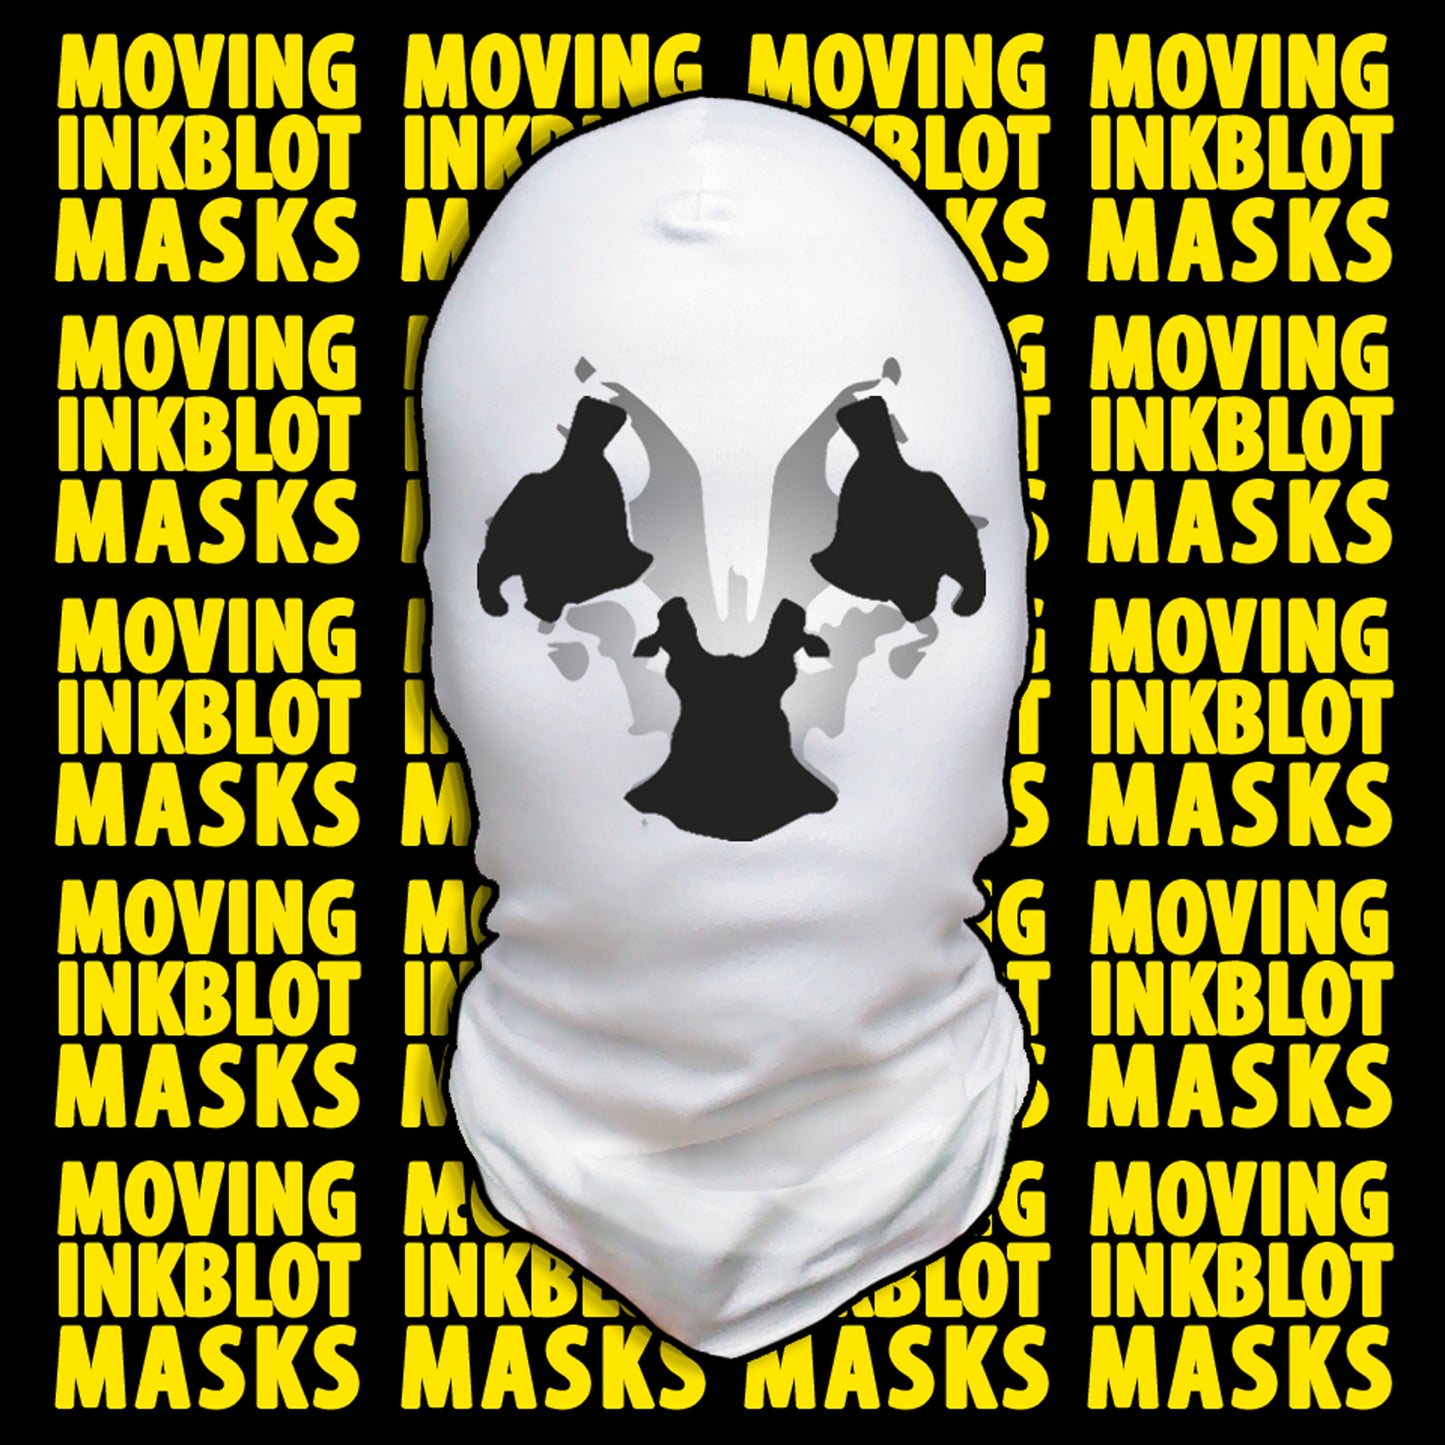 Moving Inkblot Mask | Cracked